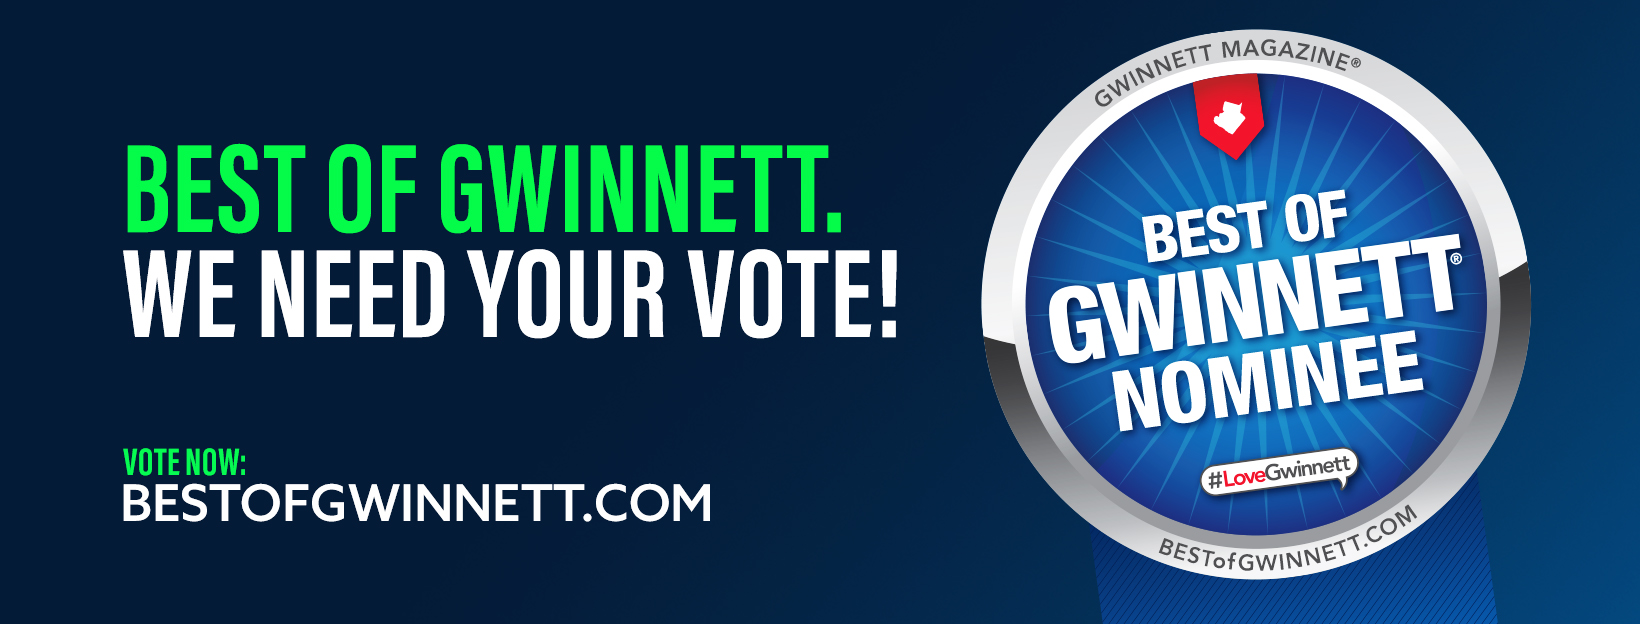 Best of Gwinnett Campaign Kit